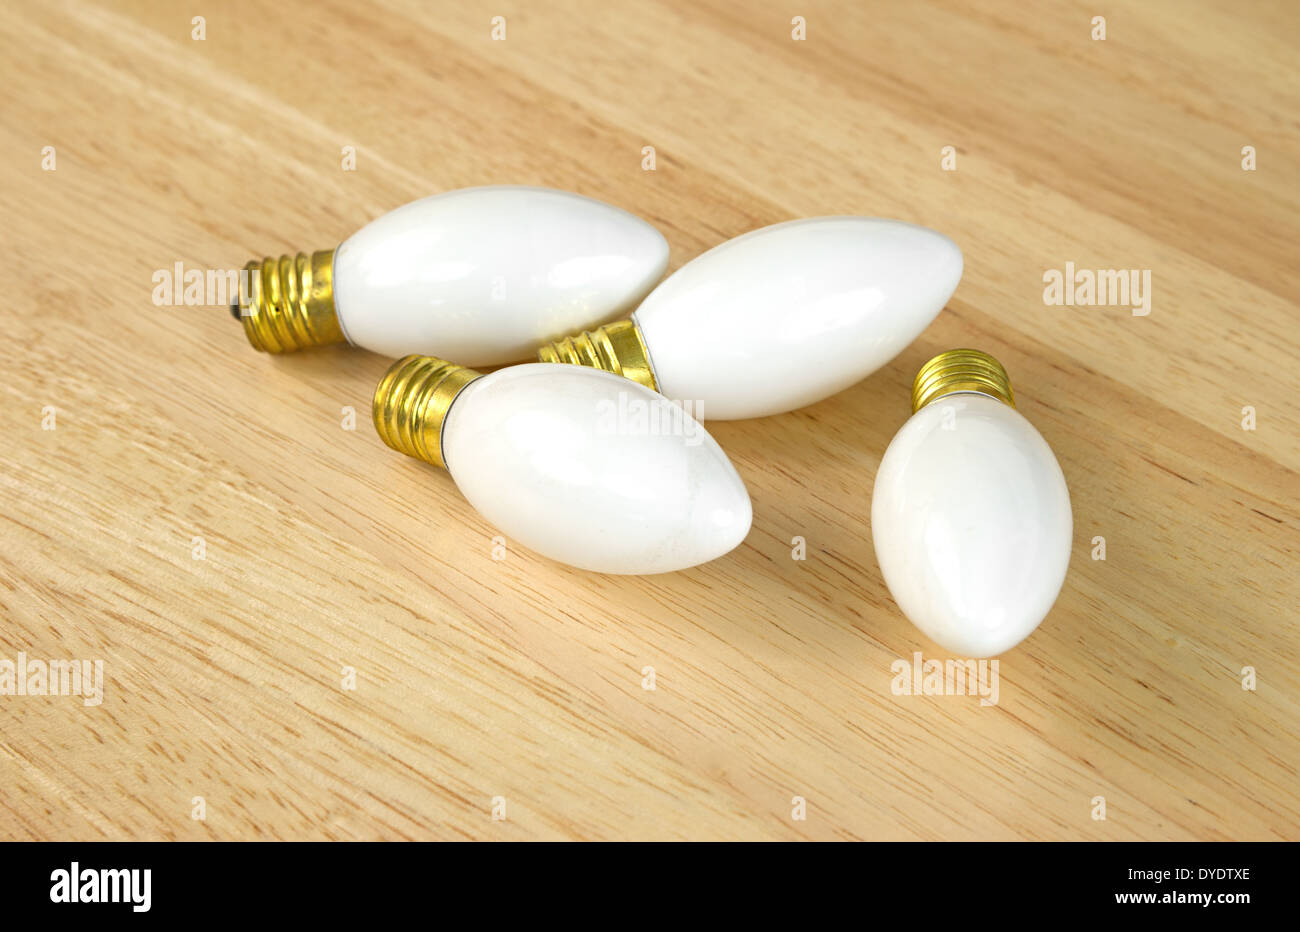 Quatre petites ampoules vanity blanc sur une table à grain de bois. Banque D'Images